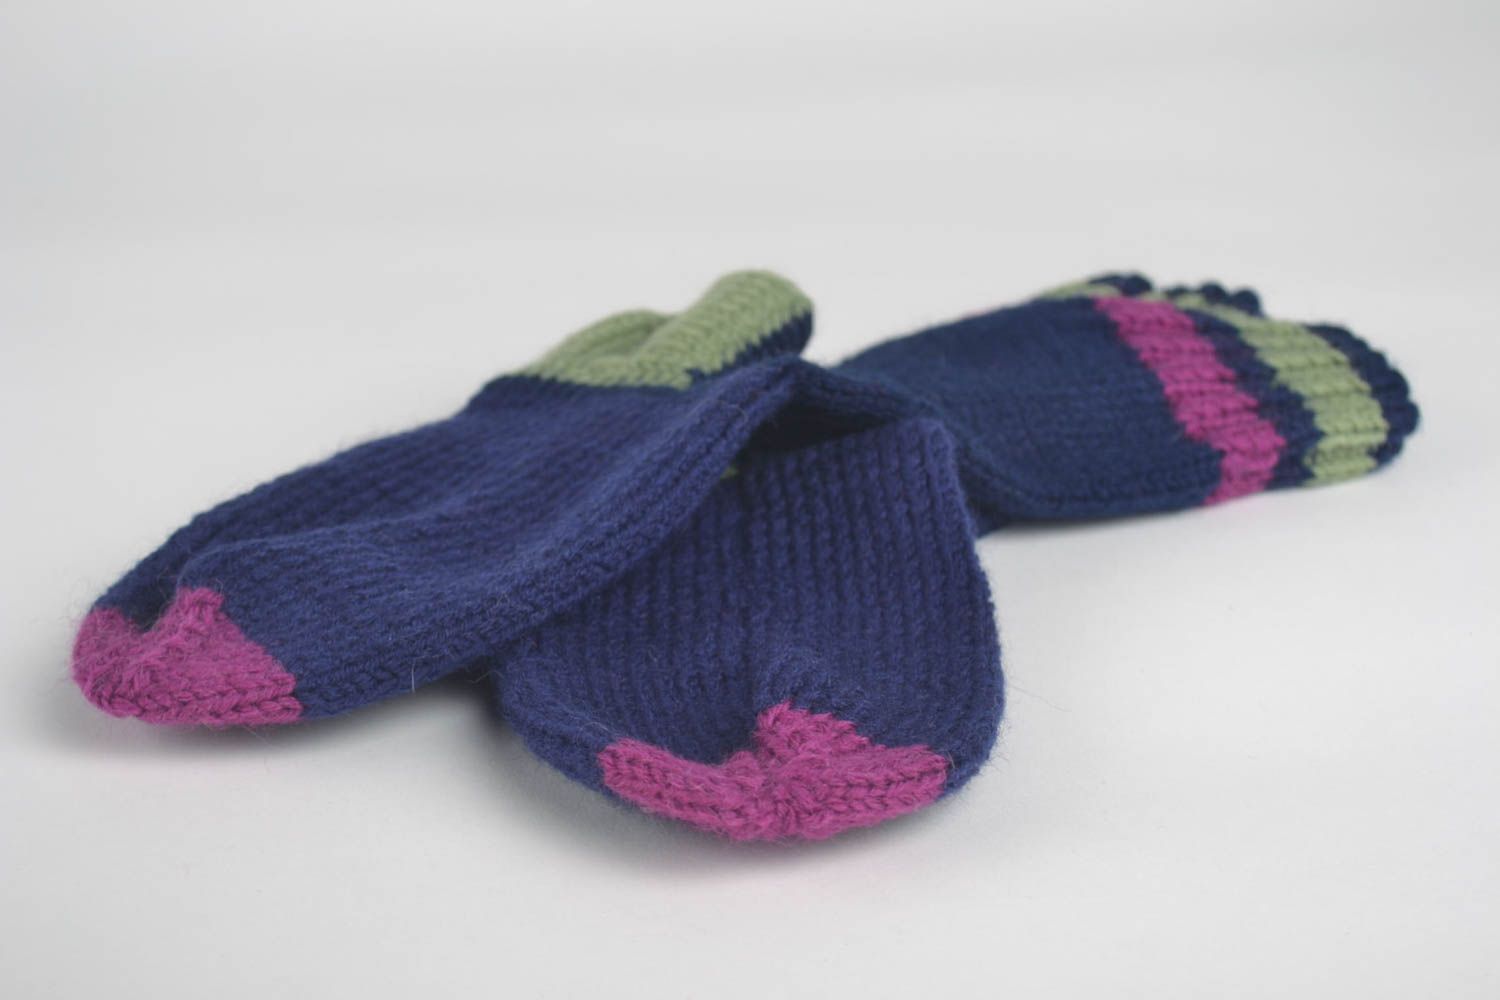 Unusual handmade wool socks knitting socks cool socks for women gifts for her photo 2